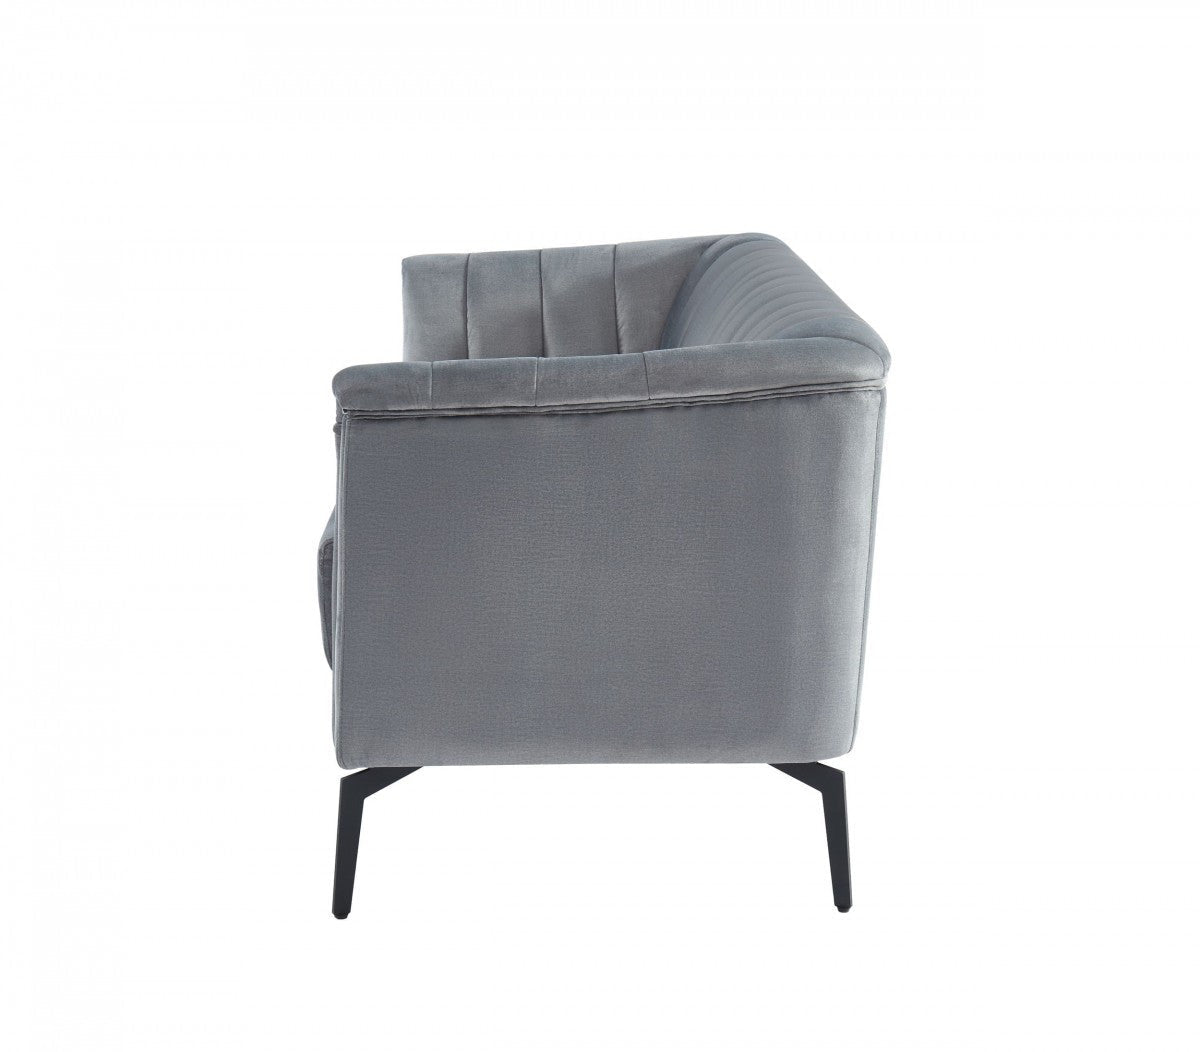 Divani Casa Patton Modern Grey Fabric Sofa